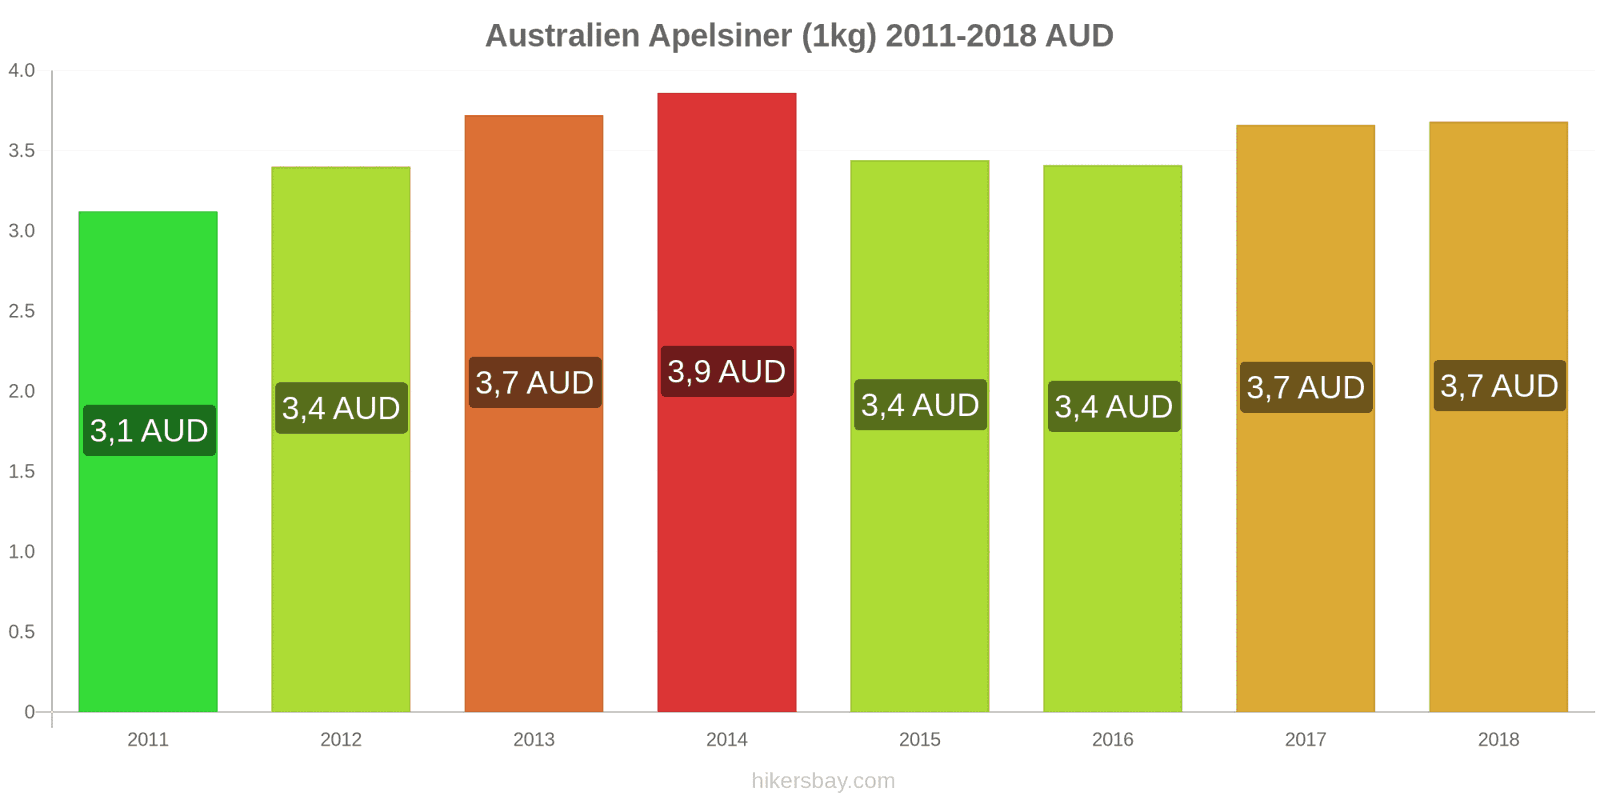 Australien prisändringar Apelsiner (1kg) hikersbay.com